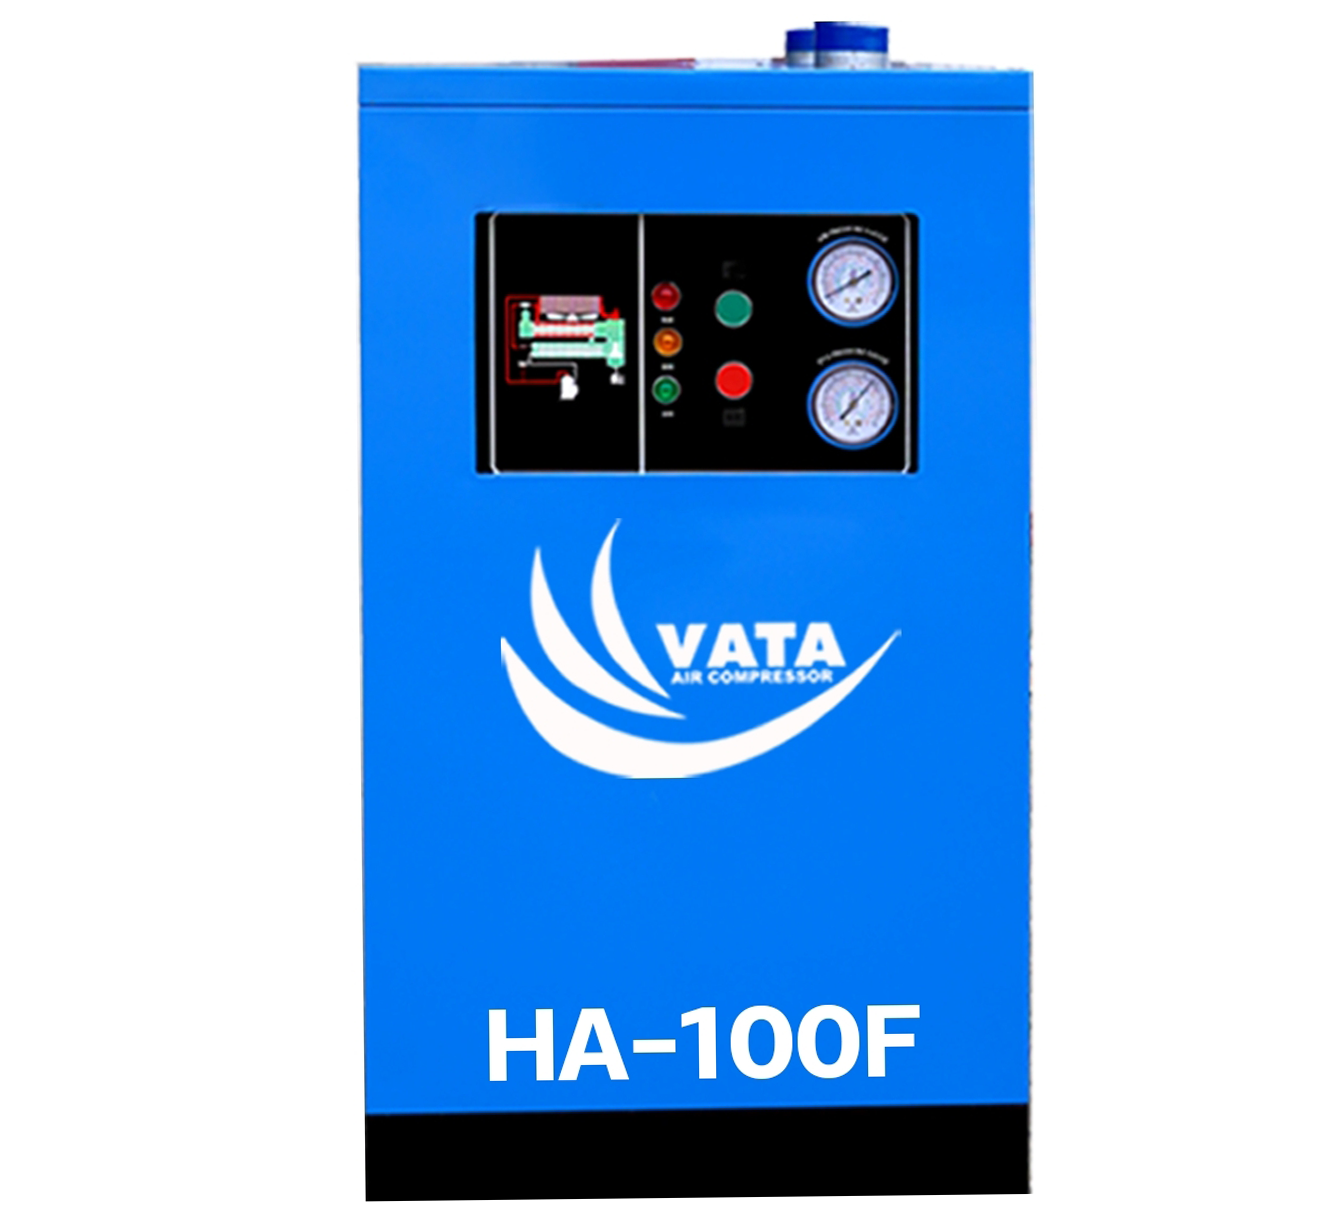 เครื่องทำลมแห้ง Refrigerated Air Dryer แบรนด์ VATA รุ่น HA-100F ขนาด 3 kw. ไฟฟ้า 220V รับประกันสินค้า 1 ปี ตามเงื่อนไขของบริษัทฯ